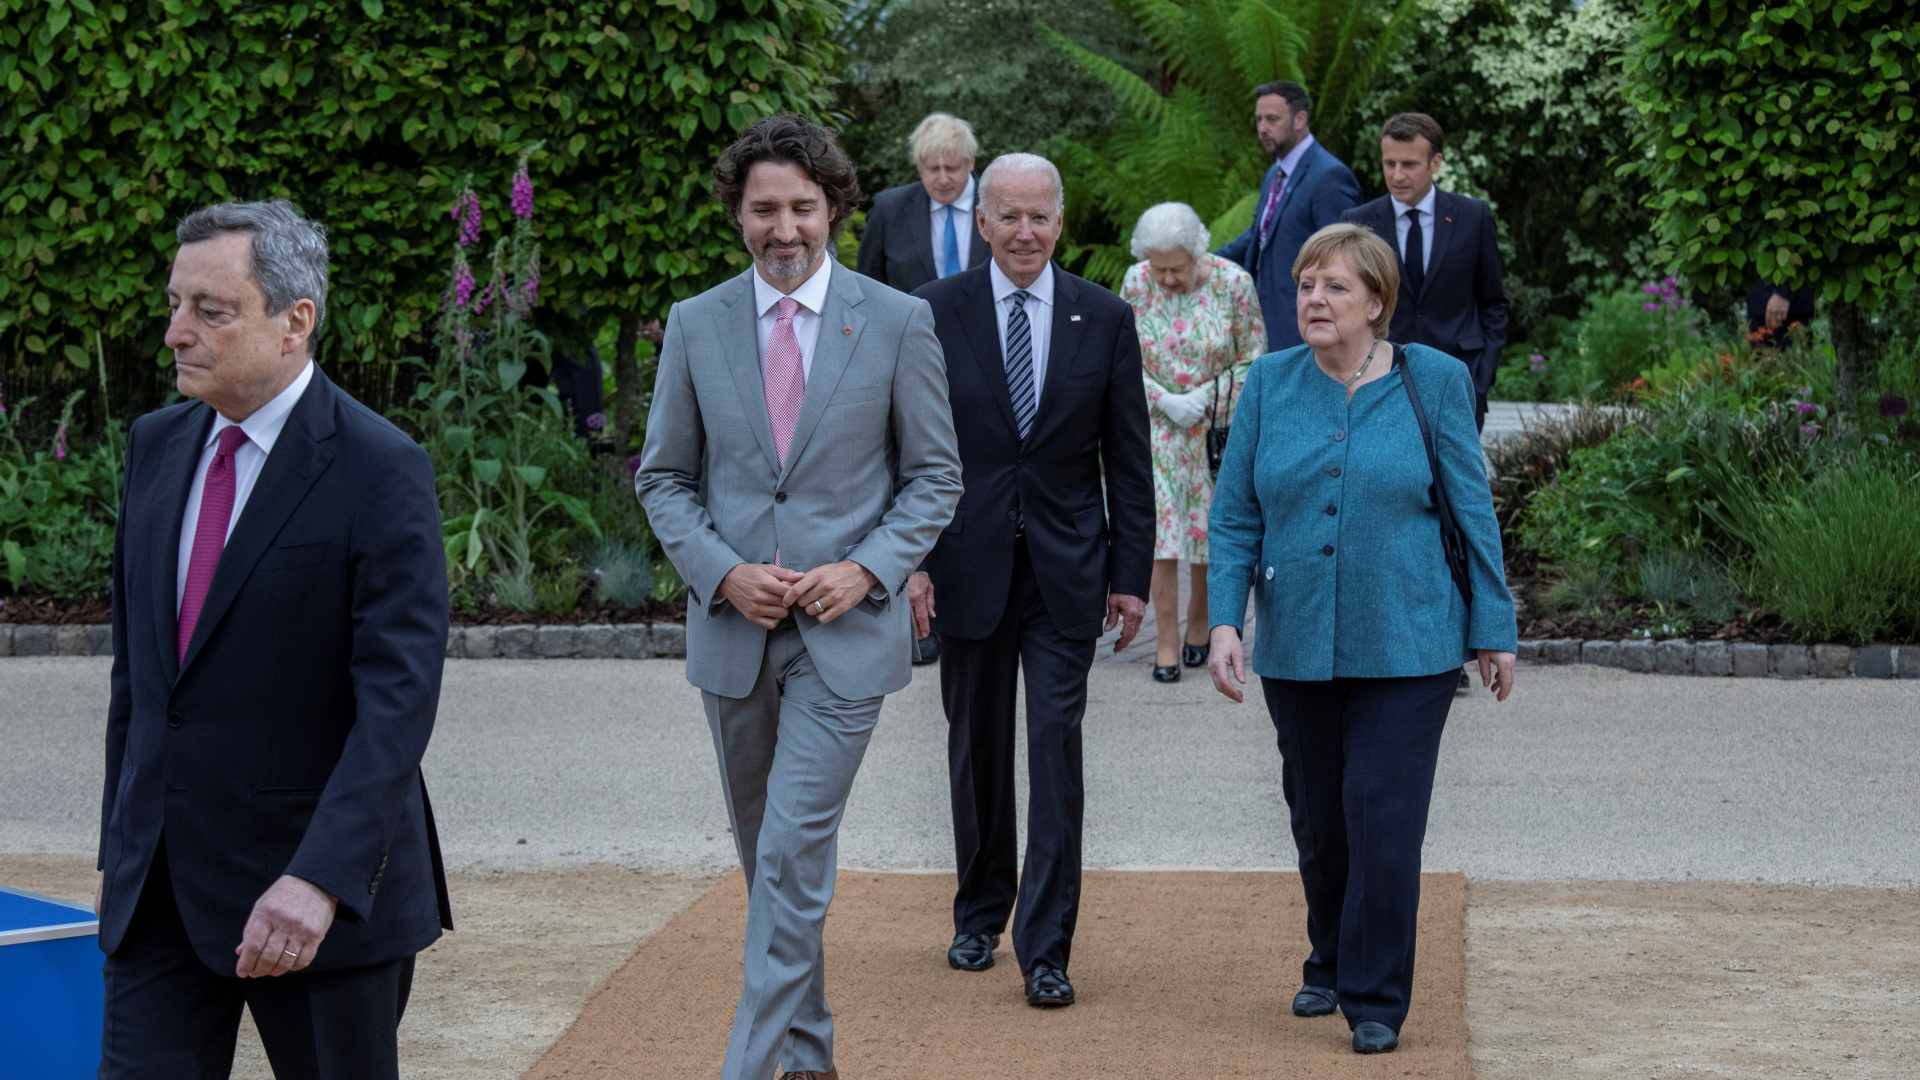 Mario Draghi, Justin Trudeau, Joe Biden, Angela Merkel, Boris Johnson, Emmanuel Macron und Königin Elizabeth II. gehen durch einen Garten. | REUTERS